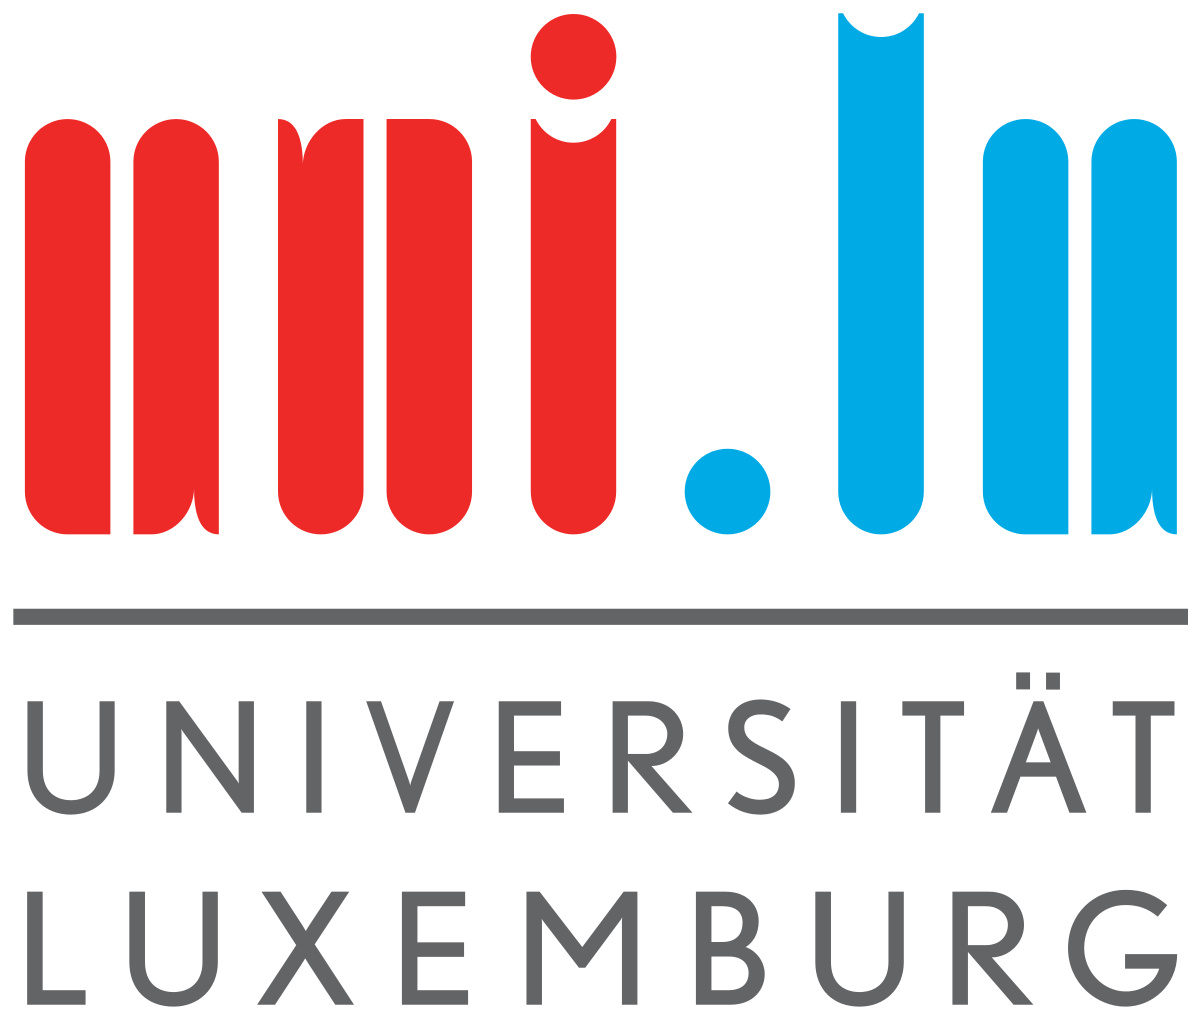 Universität Luxemburg